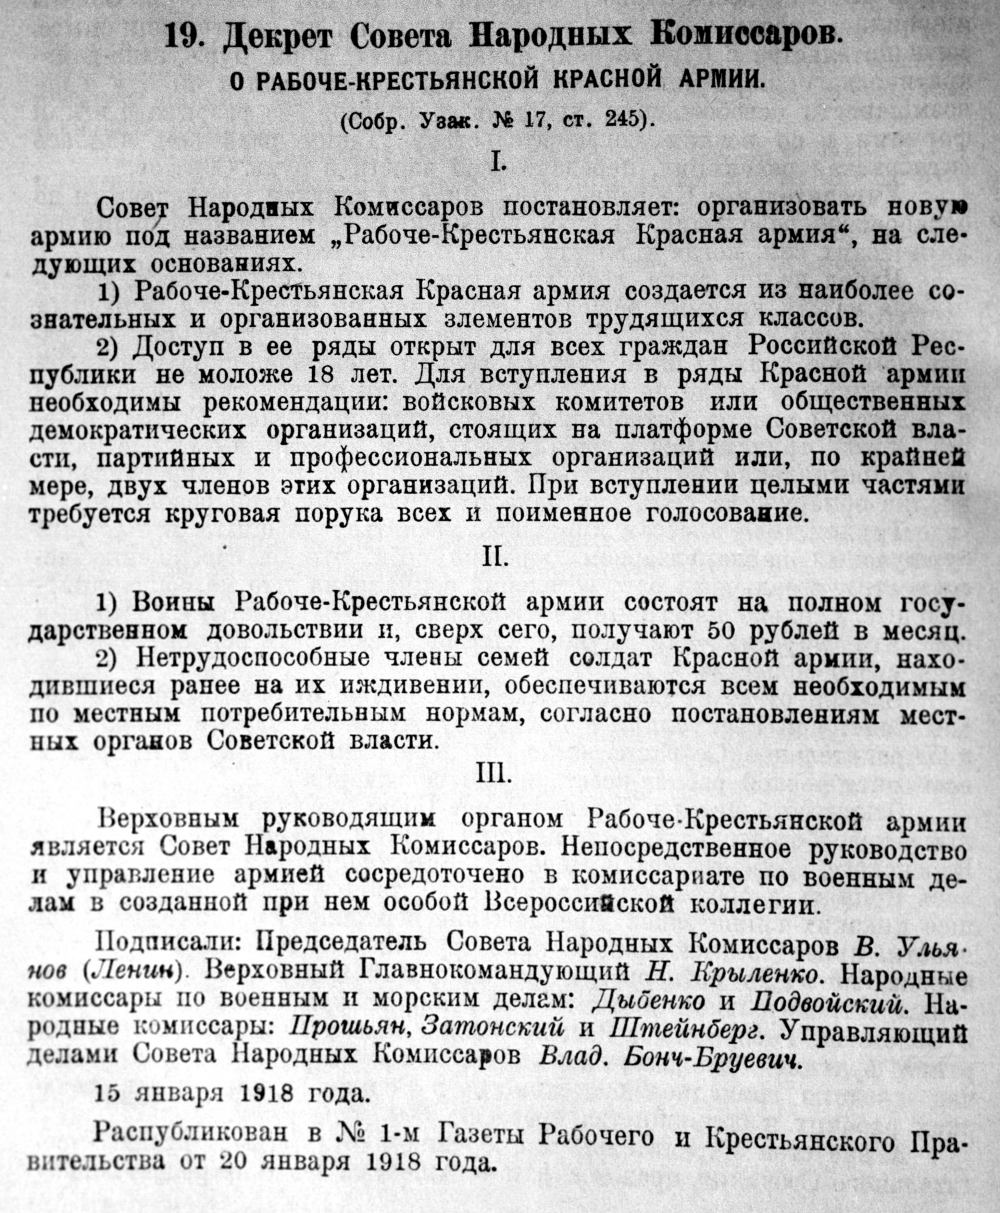 Декрет Совета Народных Комиссаров об организации Рабоче-Крестьянской Красной армии от 20 января 1918 года.